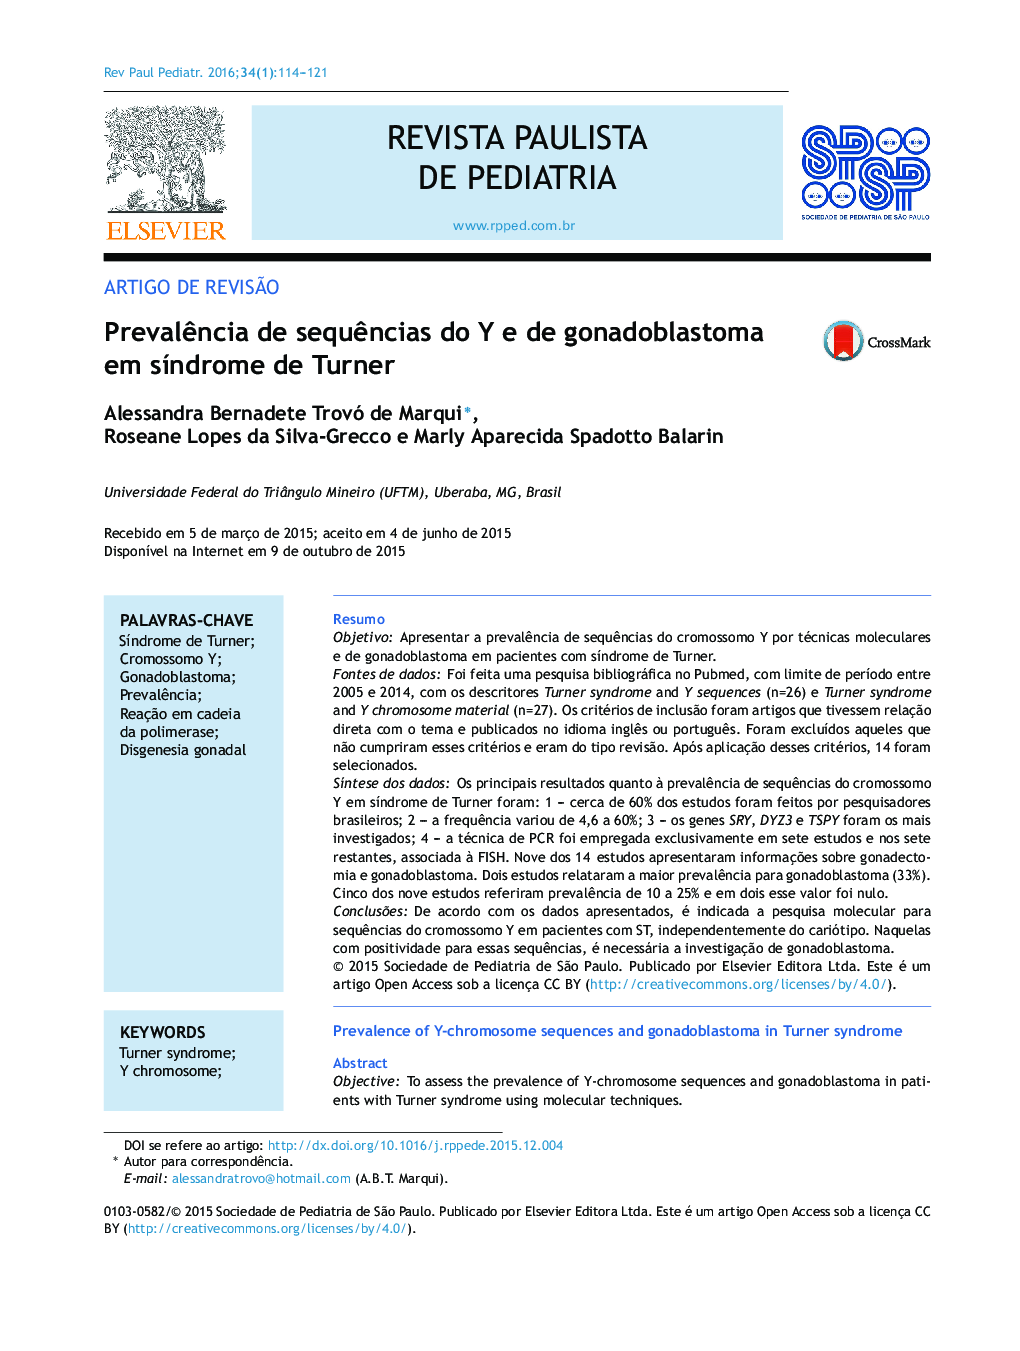 Prevalência de sequências do Y e de gonadoblastoma em síndrome de Turner